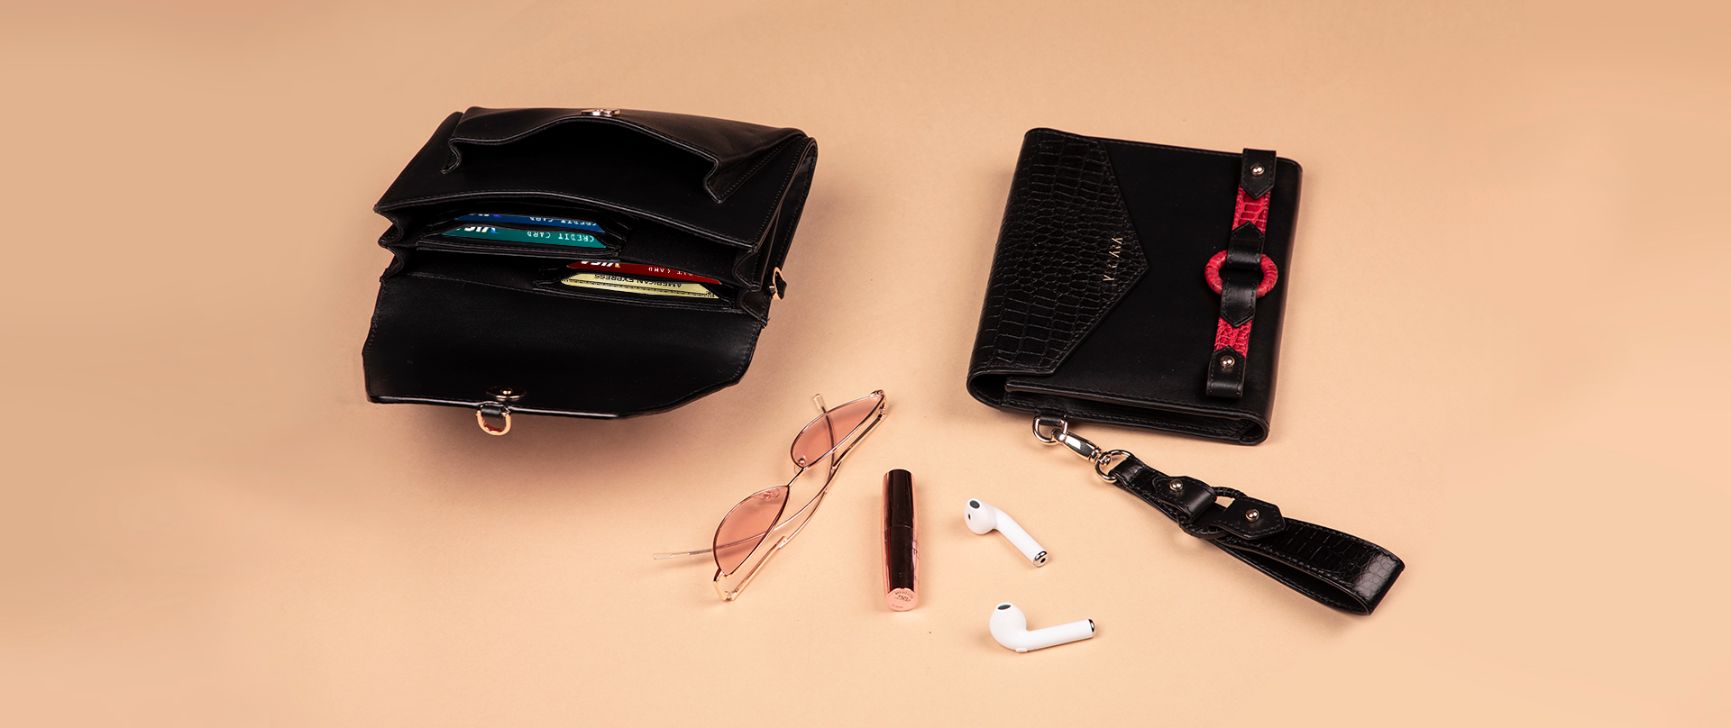 Black leather Ember Bag & sleek wallet with card case